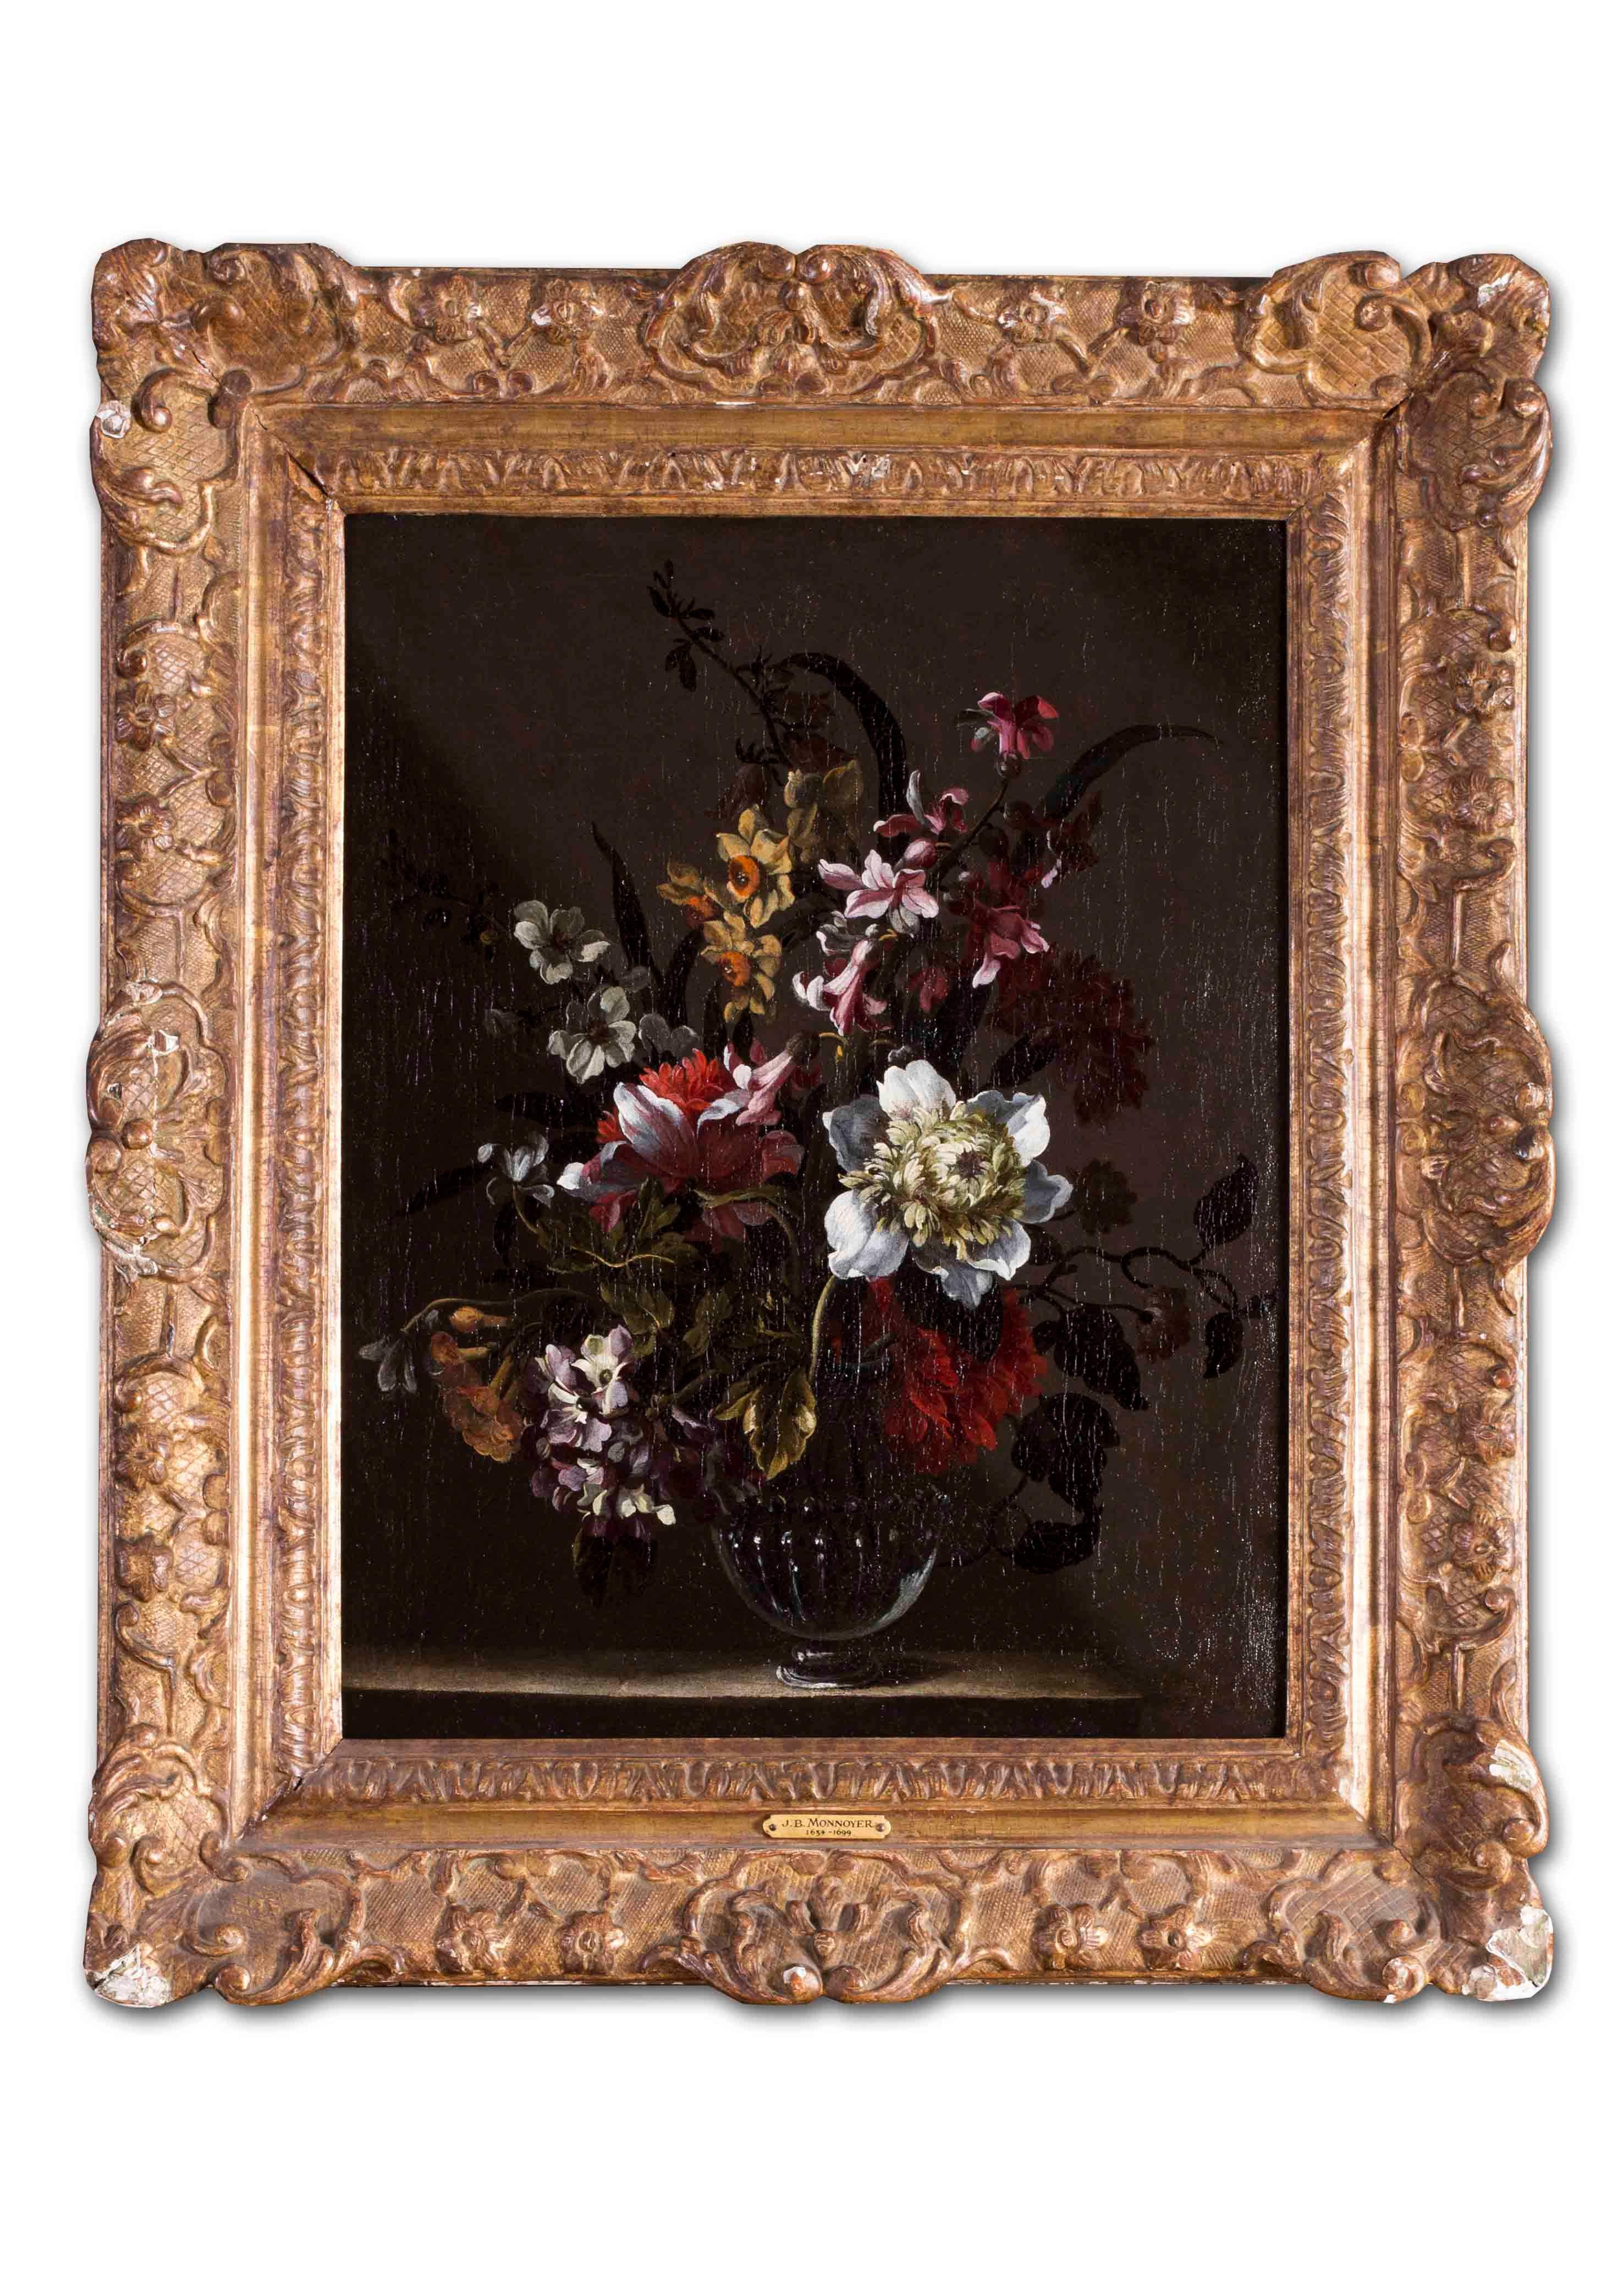 Flemish School, 17th Century Still-Life Painting – Flämisches Ölgemälde eines alten Meisters mit Blumen in einer Vase